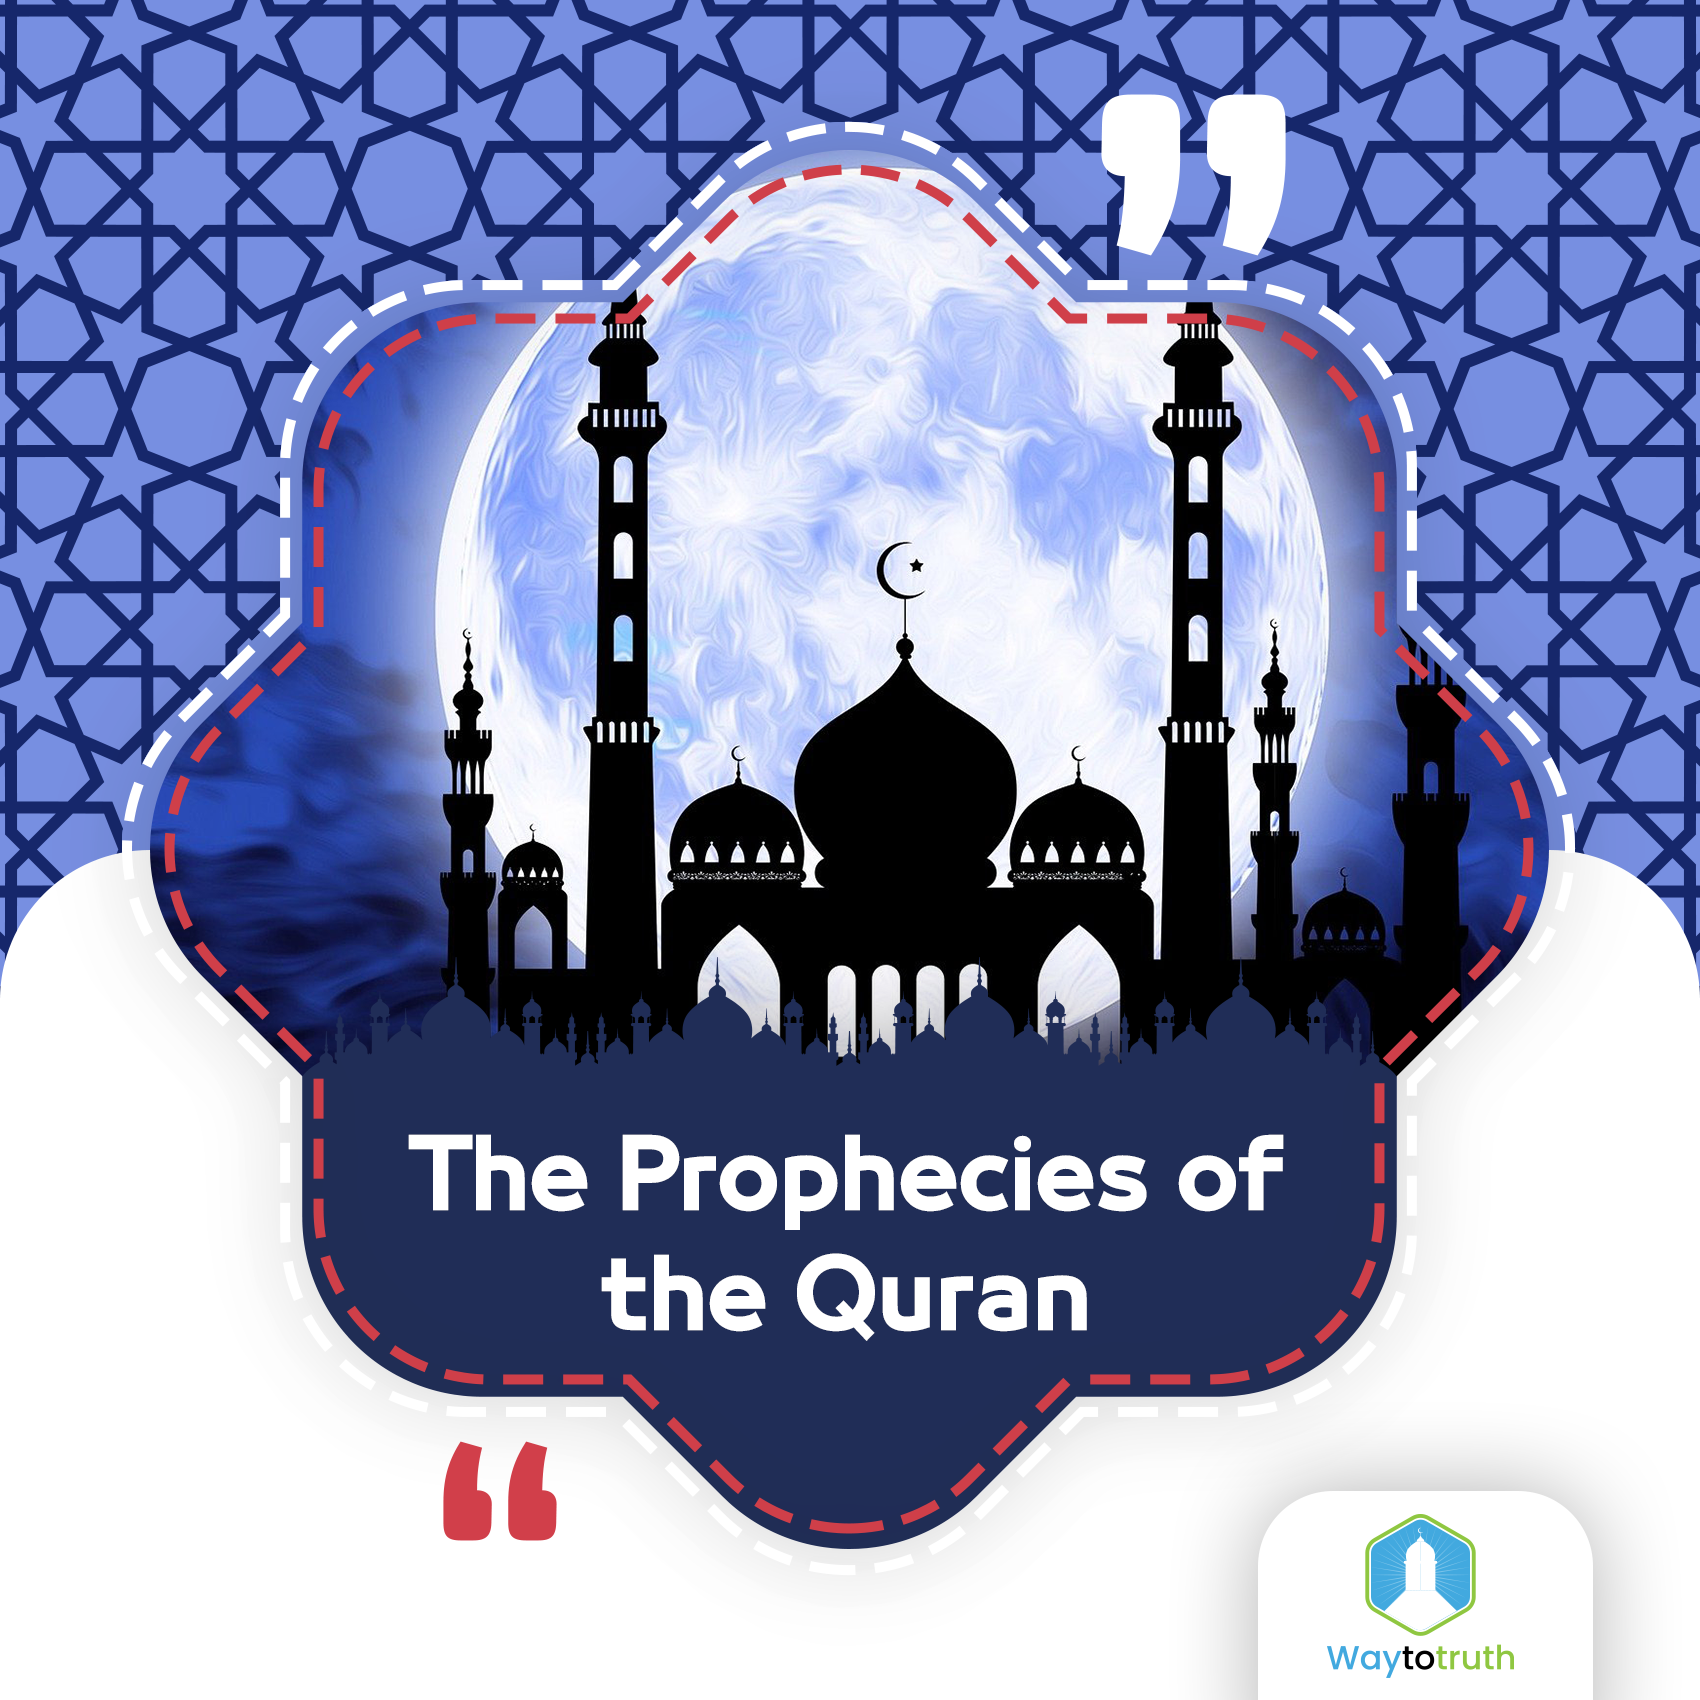 The Prophecies of the Quran